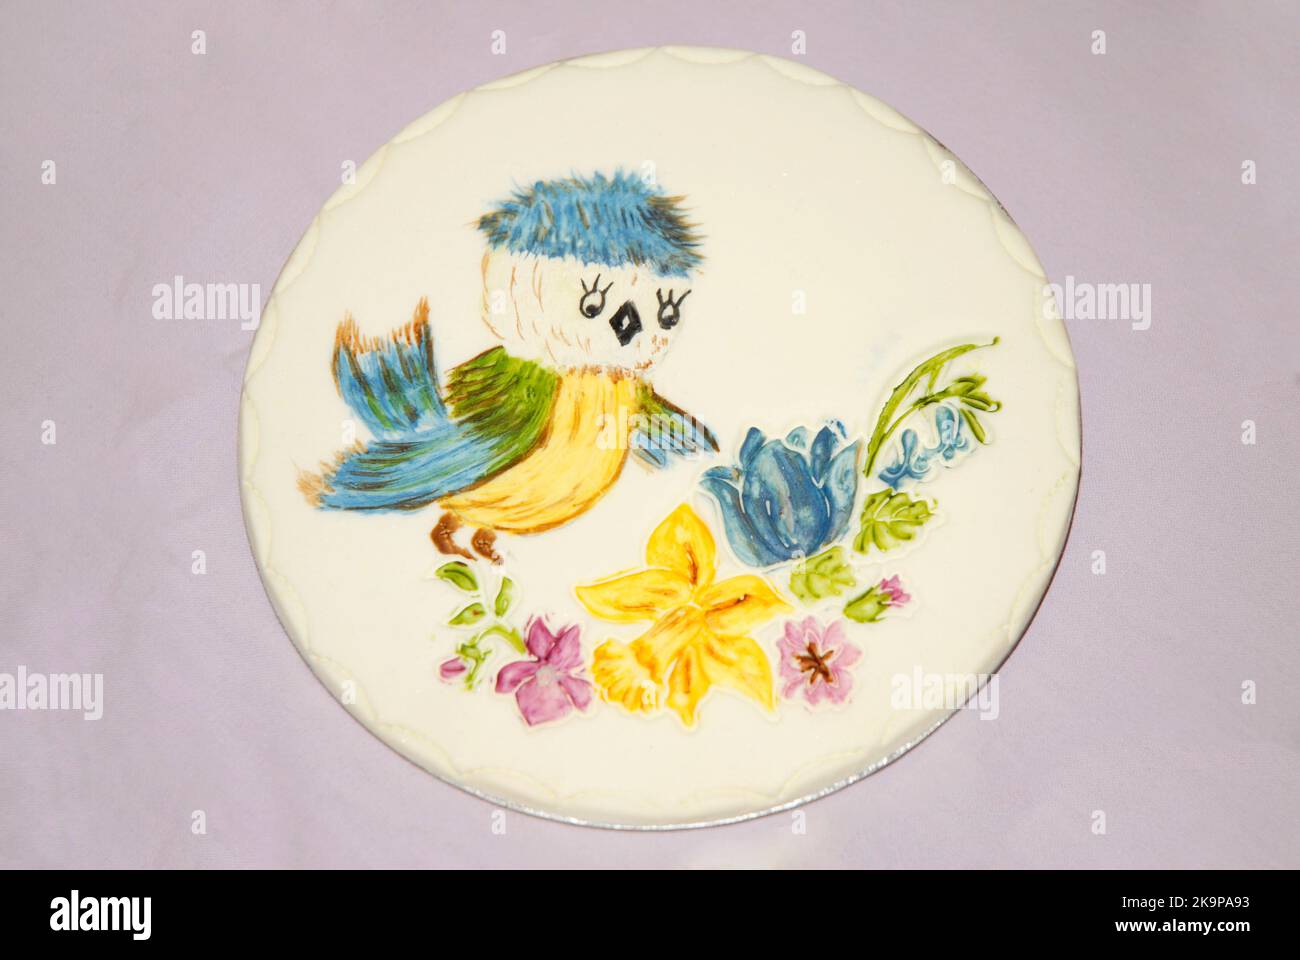 Plaque décorative pour sugarcraft pour gâteaux ou autres occasions festives, montrant un oiseau avec une tête bleue et des ailes regardant des fleurs Banque D'Images